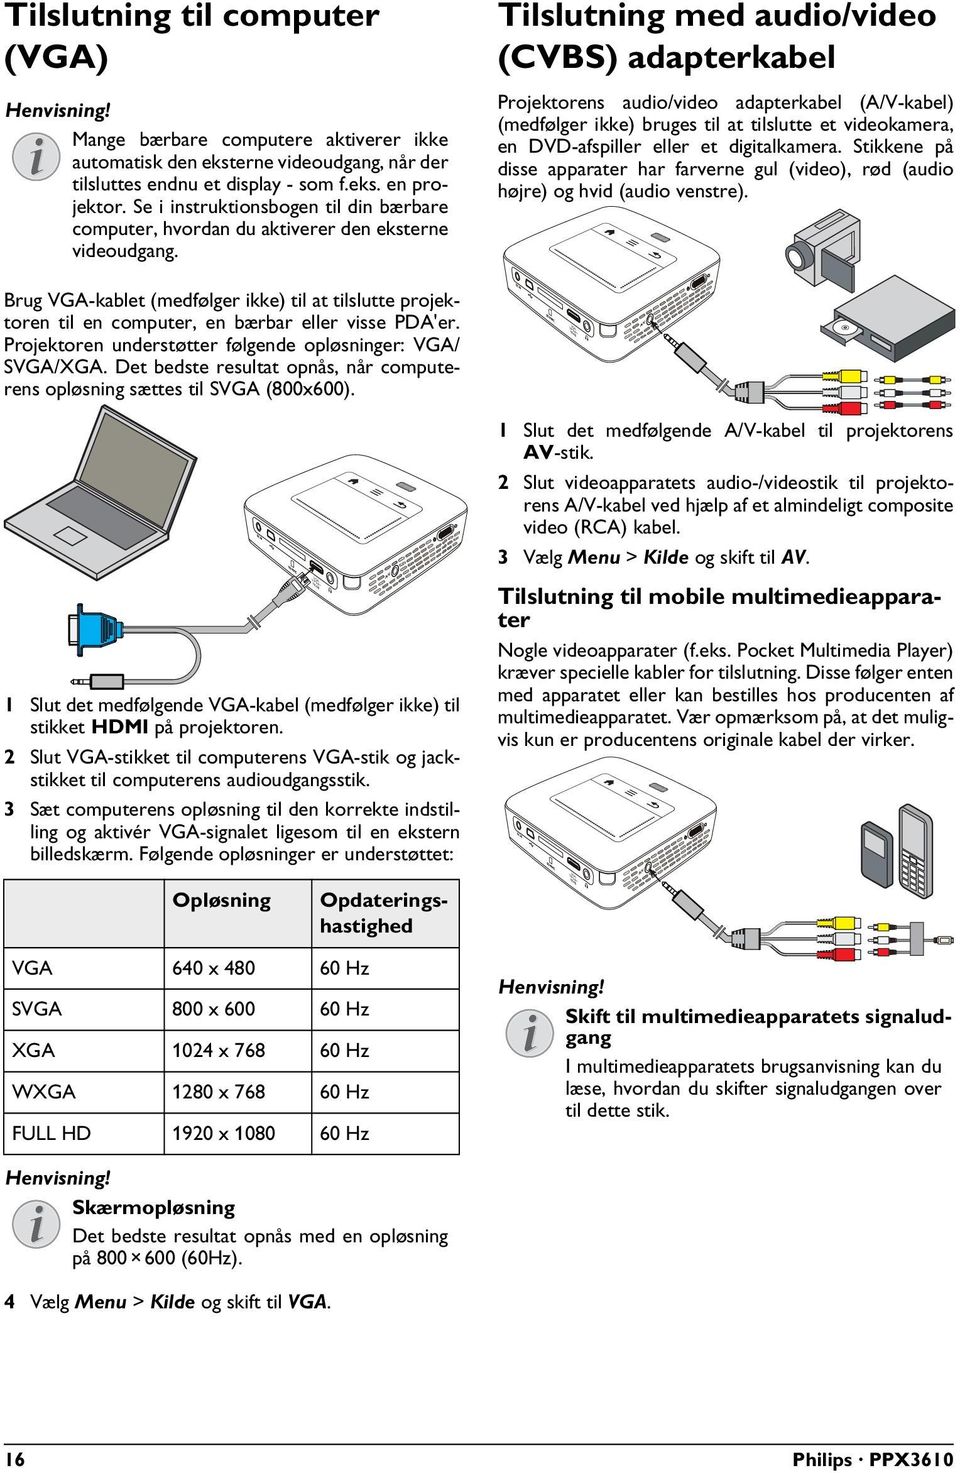 Brug VGA-kablet (medfølger ikke) til at tilslutte projektoren til en computer, en bærbar eller visse PDA'er. Projektoren understøtter følgende opløsninger: VGA/ SVGA/XGA.